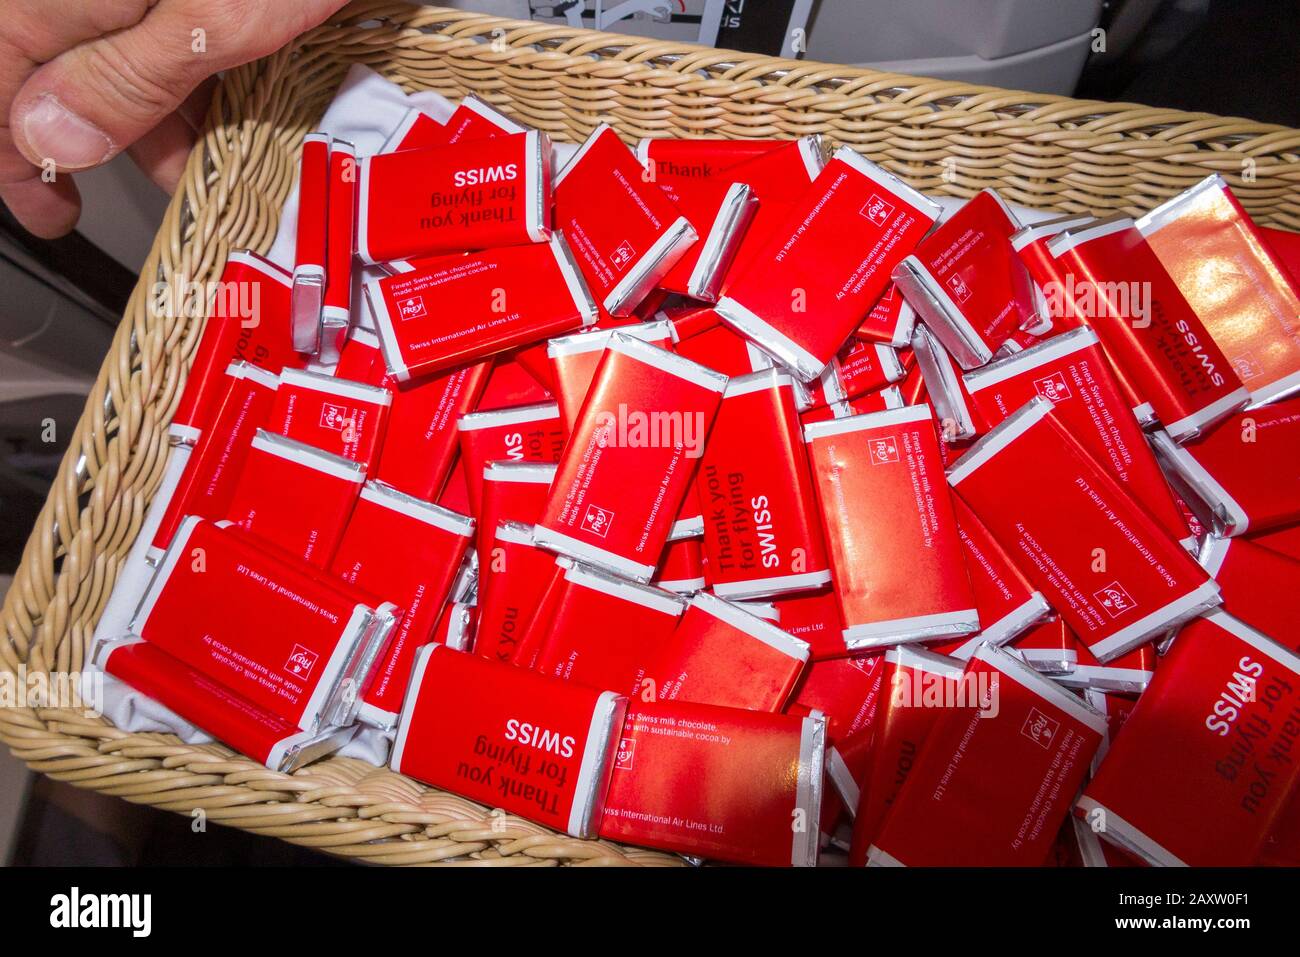 Un panier de cadeau gratuit de chocolat au lait suisse présenté / distribué  / donné gratuitement aux passagers à bord d'un avion. (112 Photo Stock -  Alamy